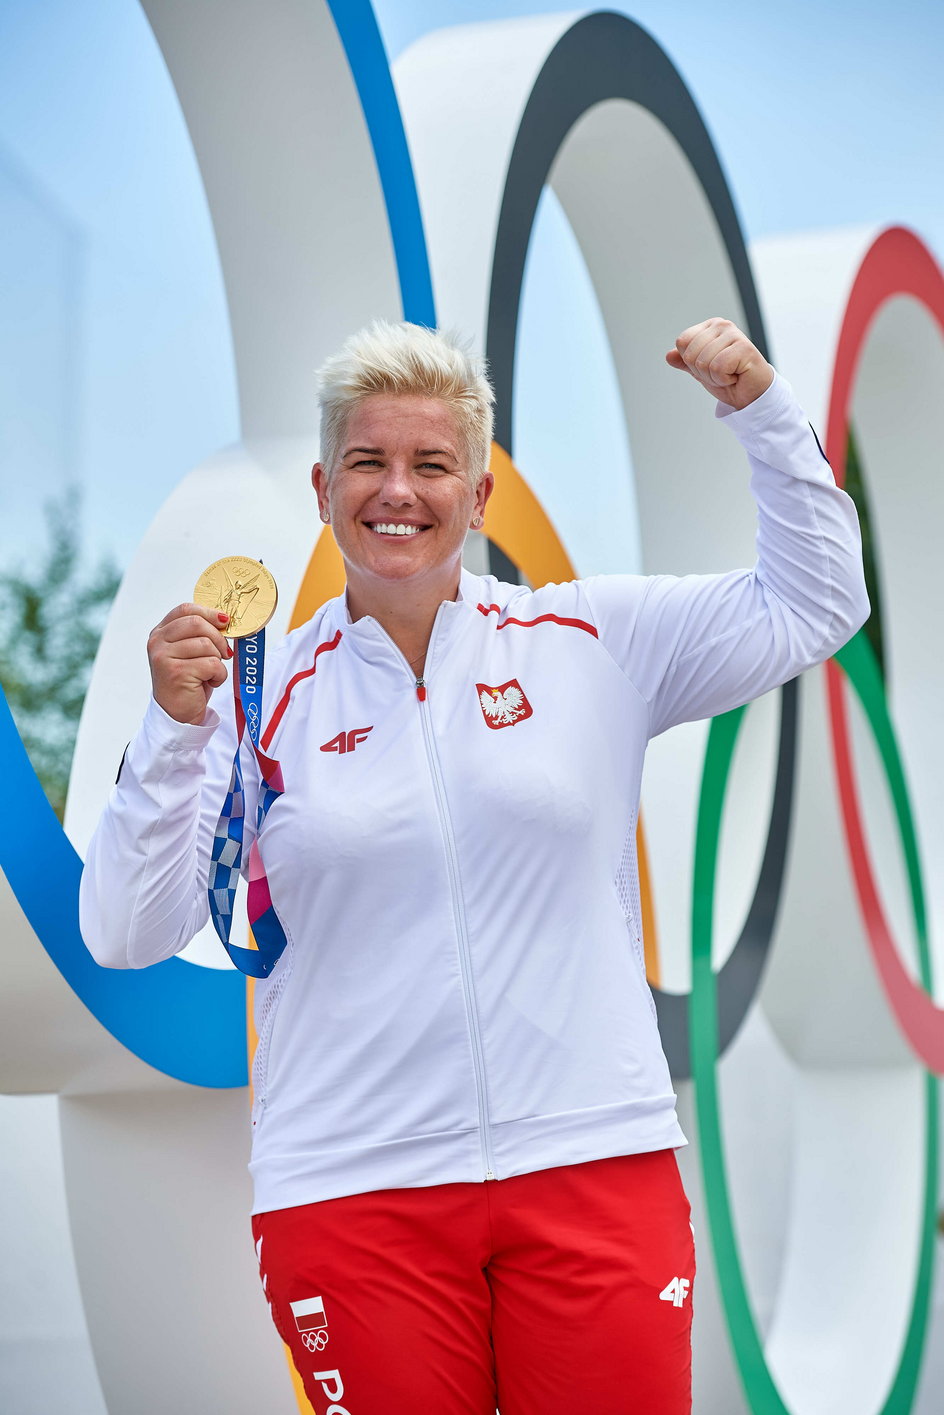 Trzykrotna z rzędu mistrzyni olimpijska Anita Włodarczyk celuje w czwarty triumf w igrzyskach.  Najwybitniejsza w historii młociarka udowadnia, że niemożliwe nie istnieje! 